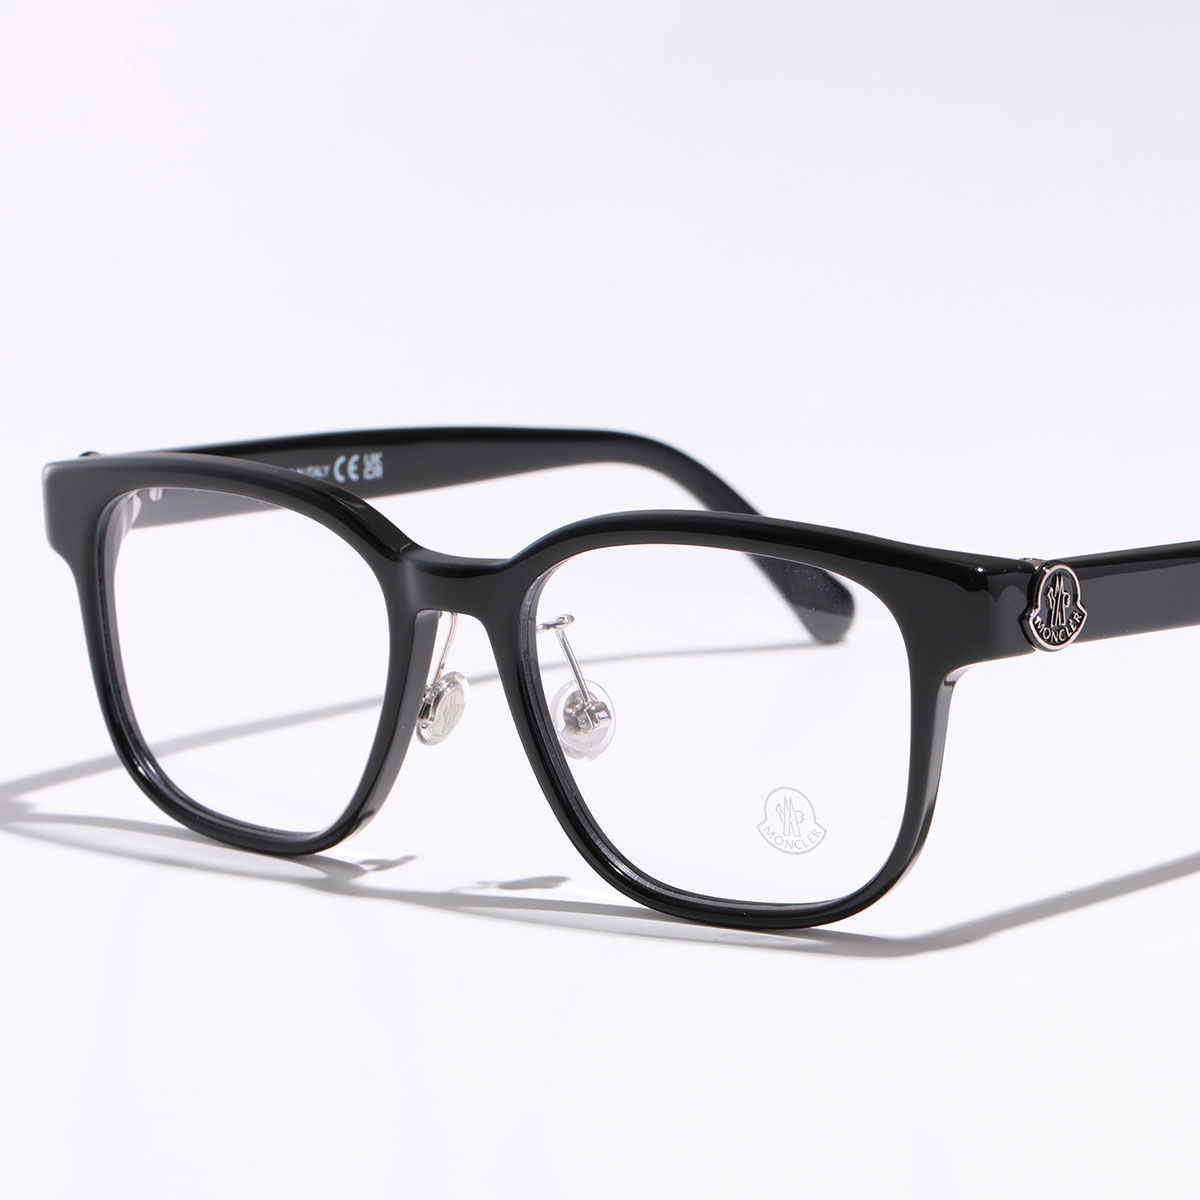 MONCLER メガネ ML5200-D メンズ ウェリントン型 伊達メガネ 黒縁メガネ アイコンロ...